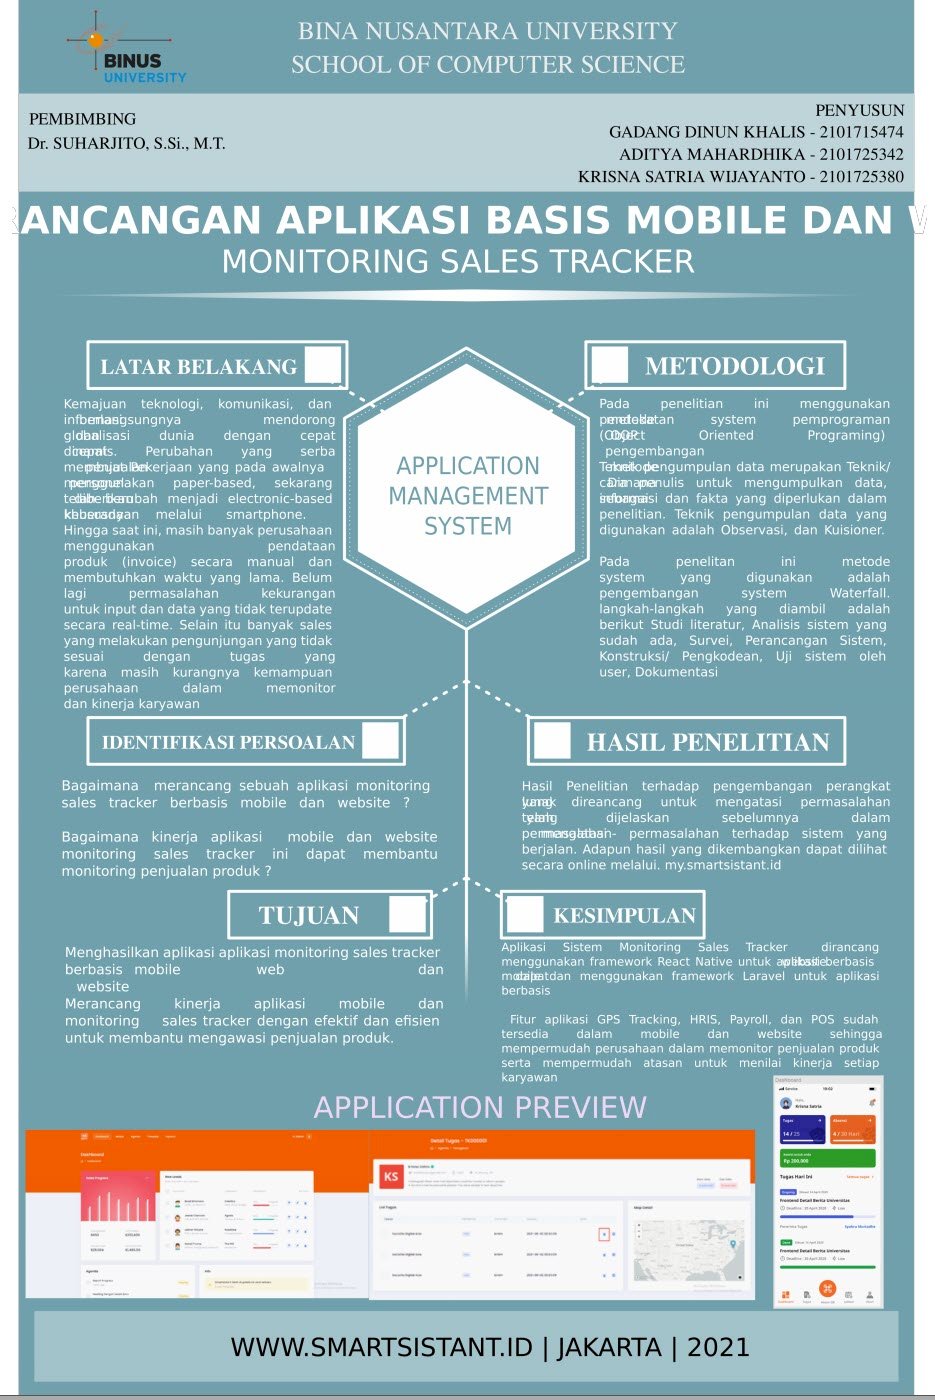 Rancangan Aplikasi Basis Mobile dan Working Monitoring Sales Tracker